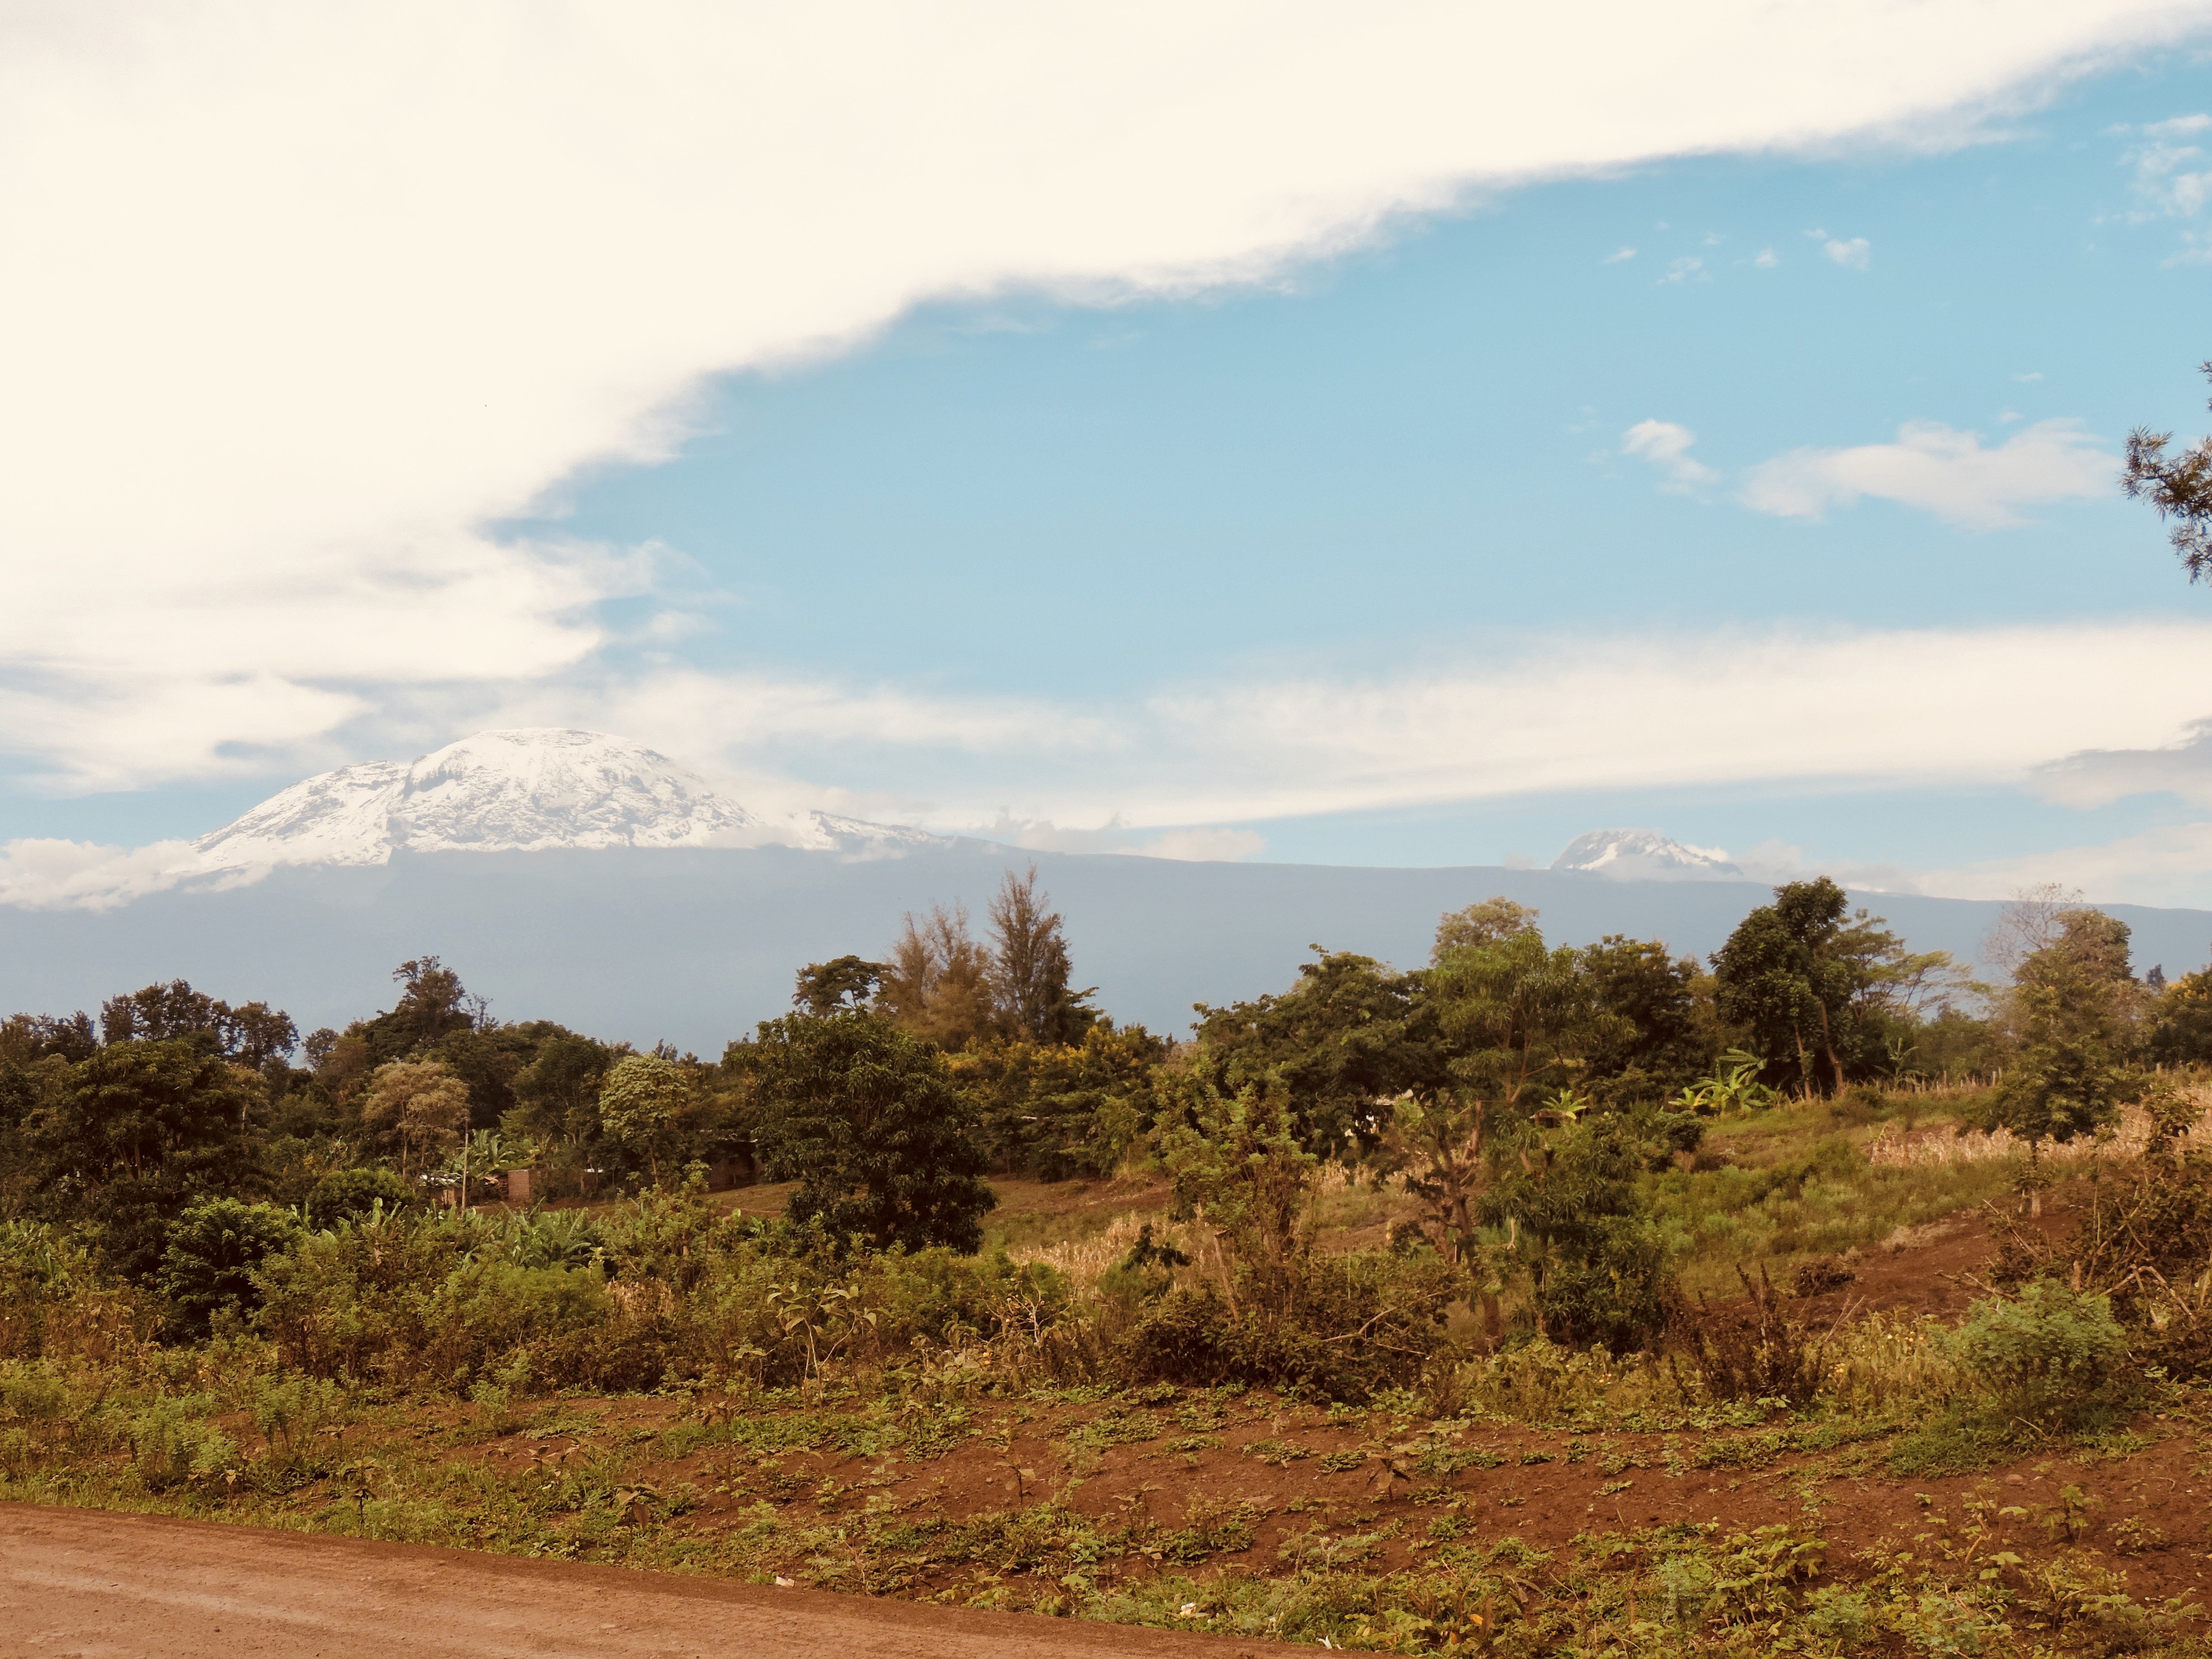 Mt. Hanang, katesh, tanzania